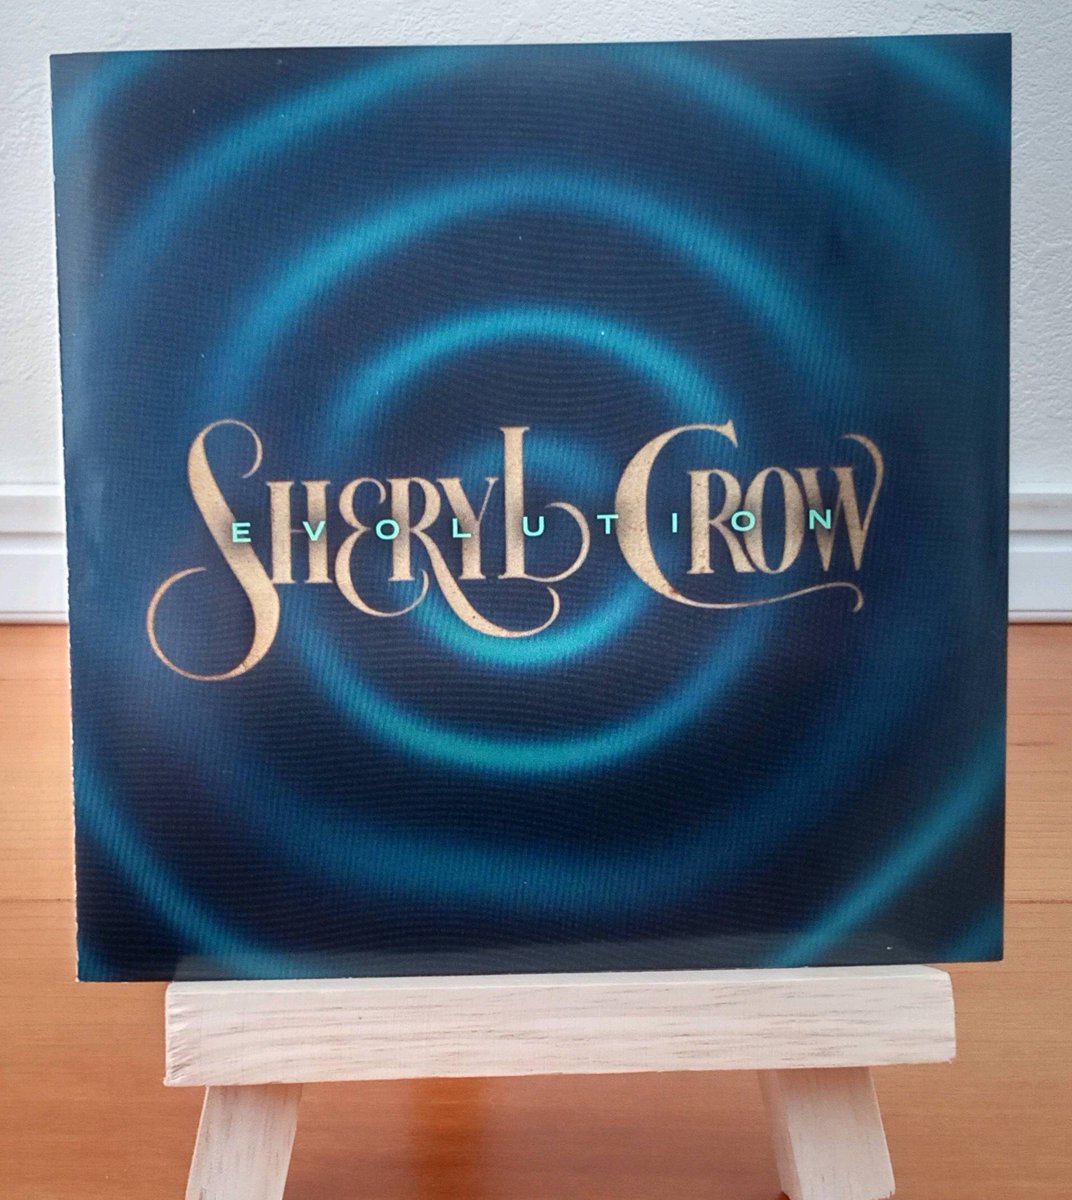 #SherylCrow の『Evolution』を聴いてます。
前作でアルバムはもう作らないと言っていたけど、新作が聴けて嬉しいです🥰
盟友、Bill Botrell、Jeff Trott、Tim Smithが作曲や🎸で参加。
ここ数作カントリーなALを経て、以前のPop&Rockな音に☺️
ヘビロテになりそう。
表題曲のTom Morelloの🎸ソロ凄っ！